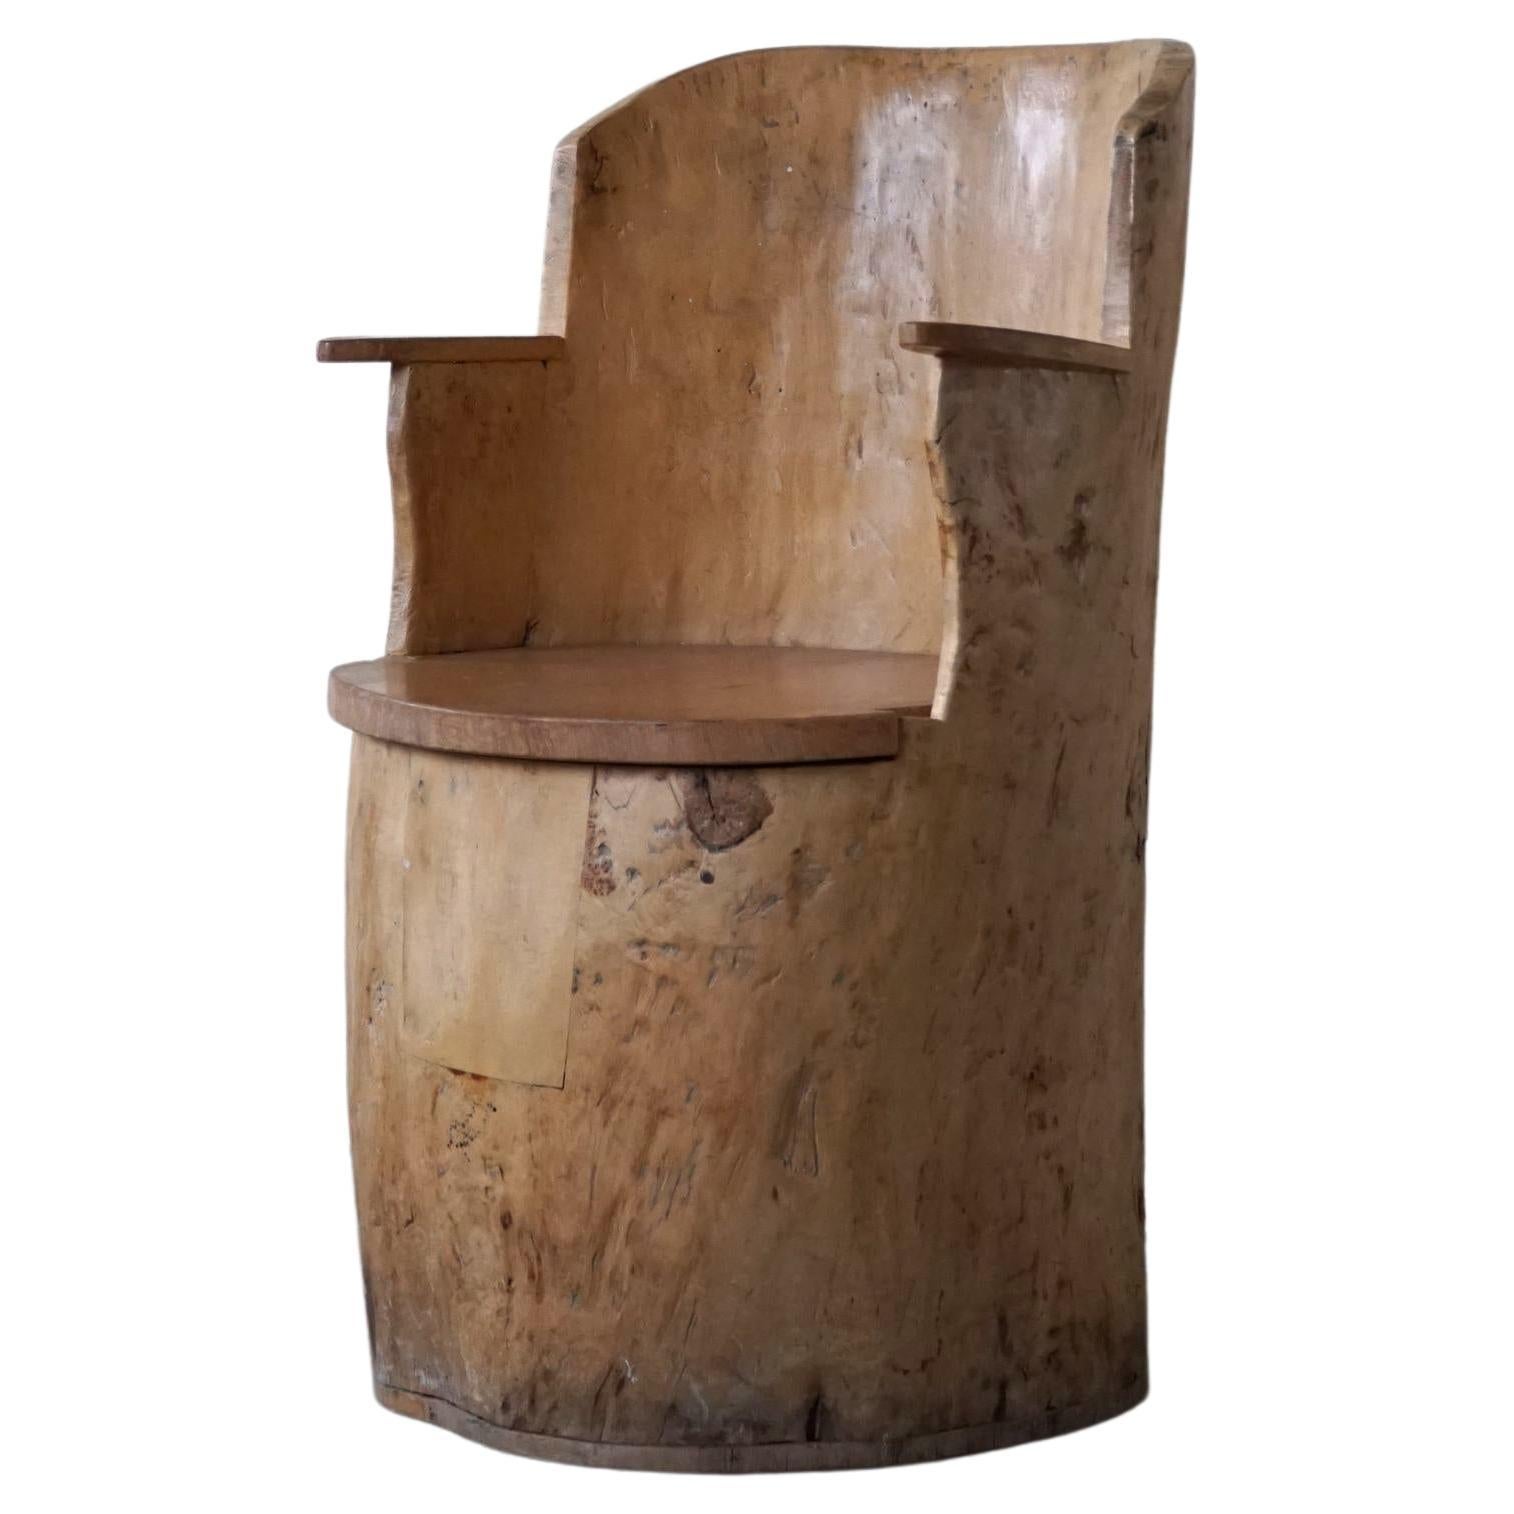 Wabi Sabi Stump Chair in Solid Birch, by a Swedish Cabinetmaker, Modern, 1950s